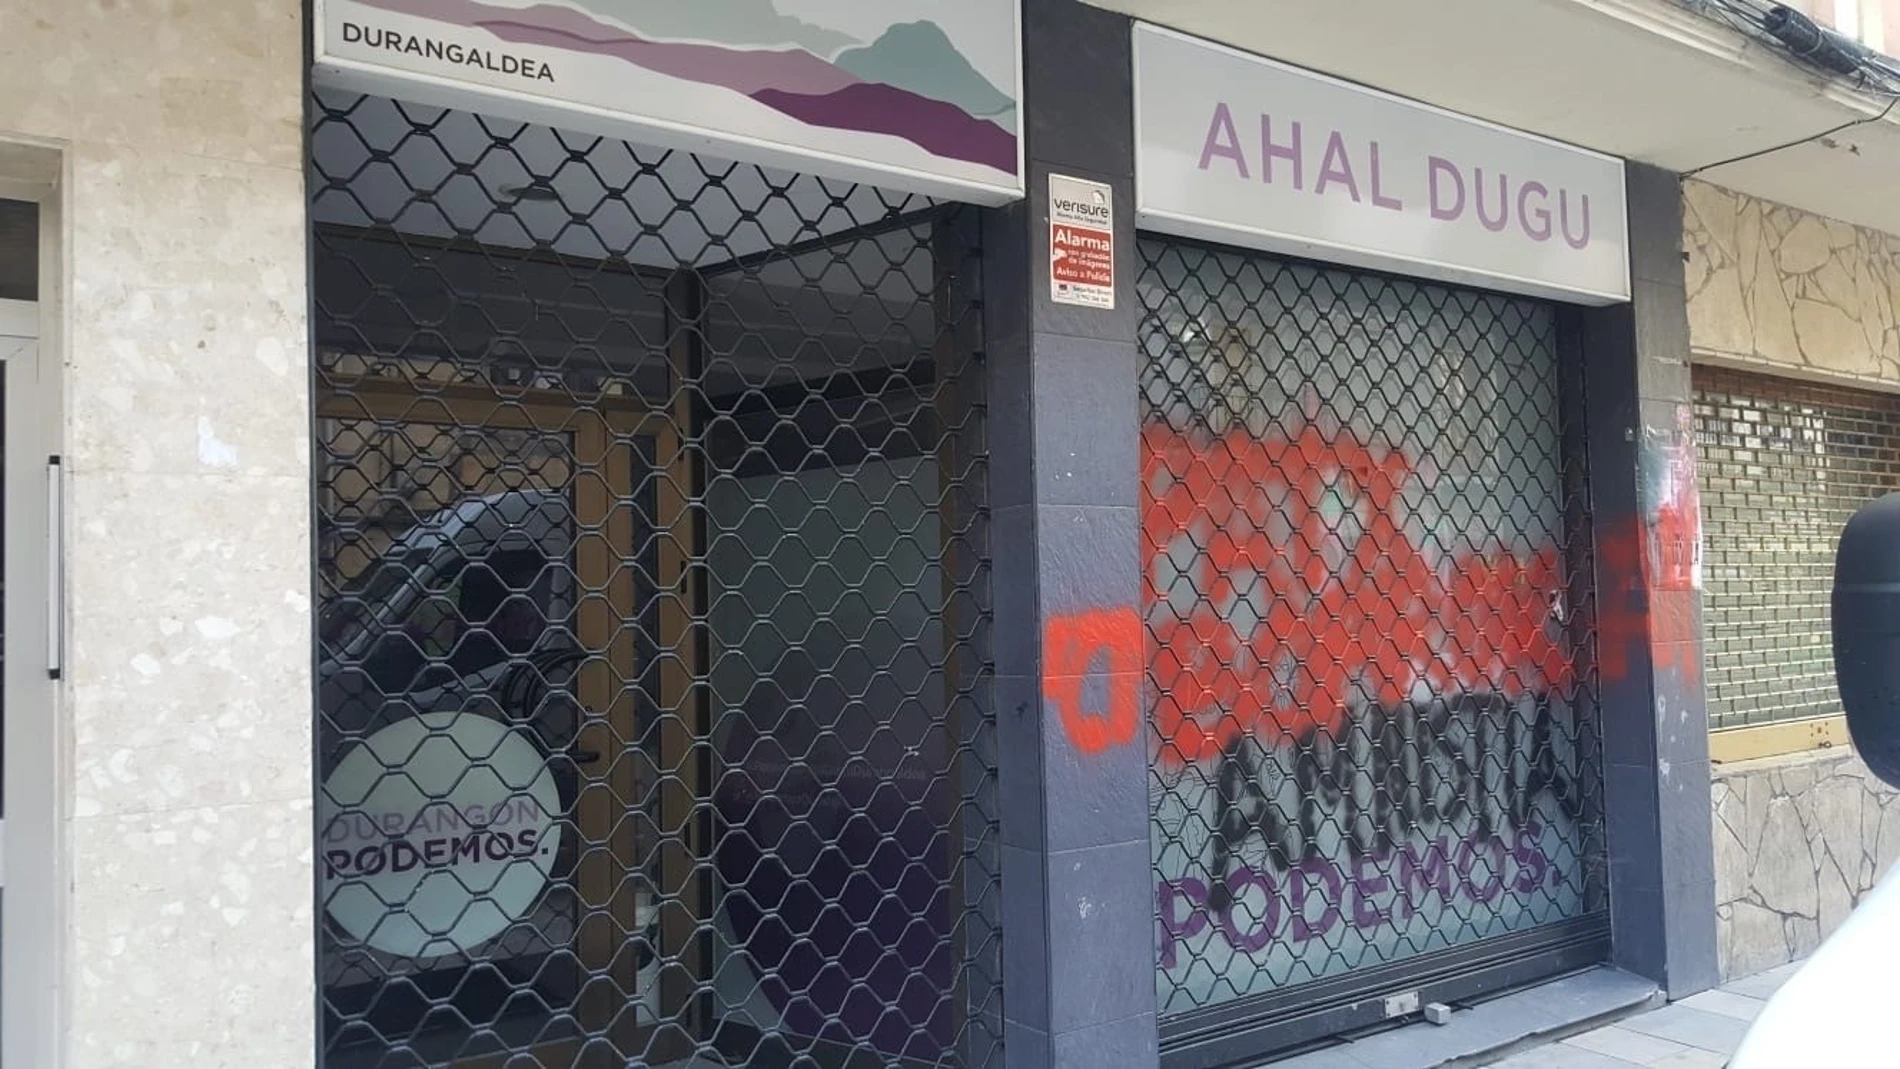 Atacan otra sede de Podemos en Durango (Bizkaia), la tercera en los últimos días